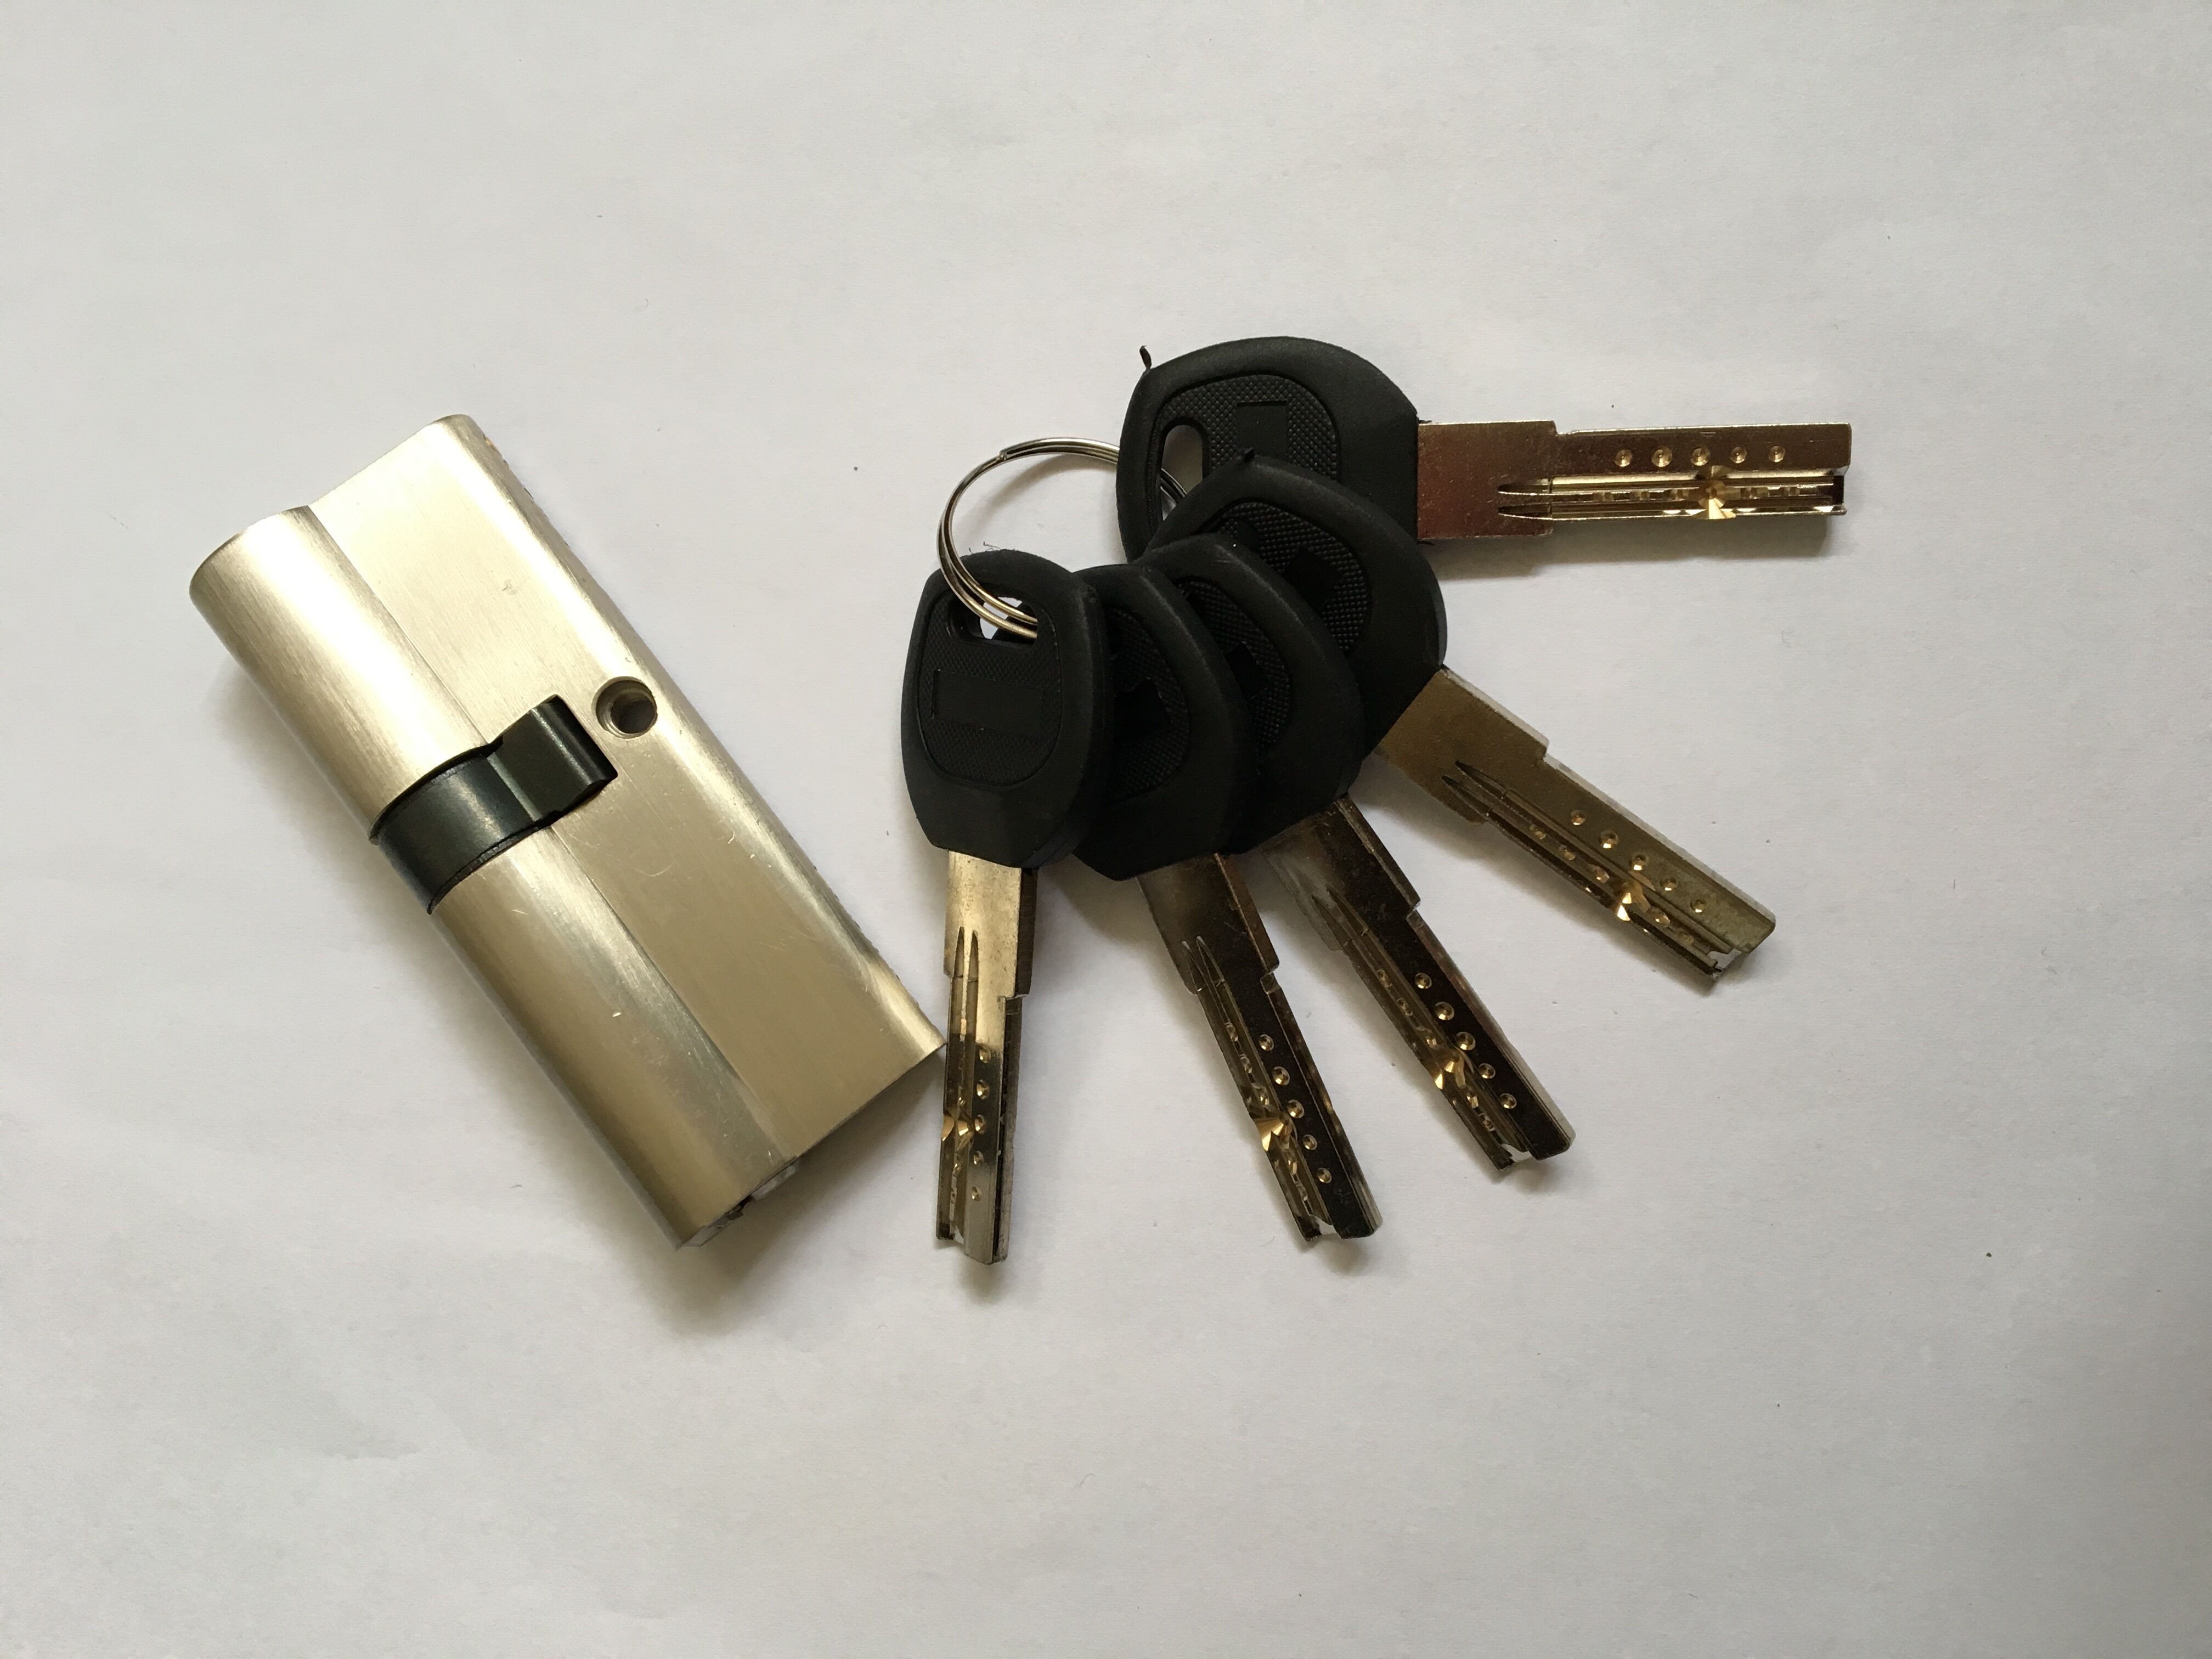  plastic head key cylinder